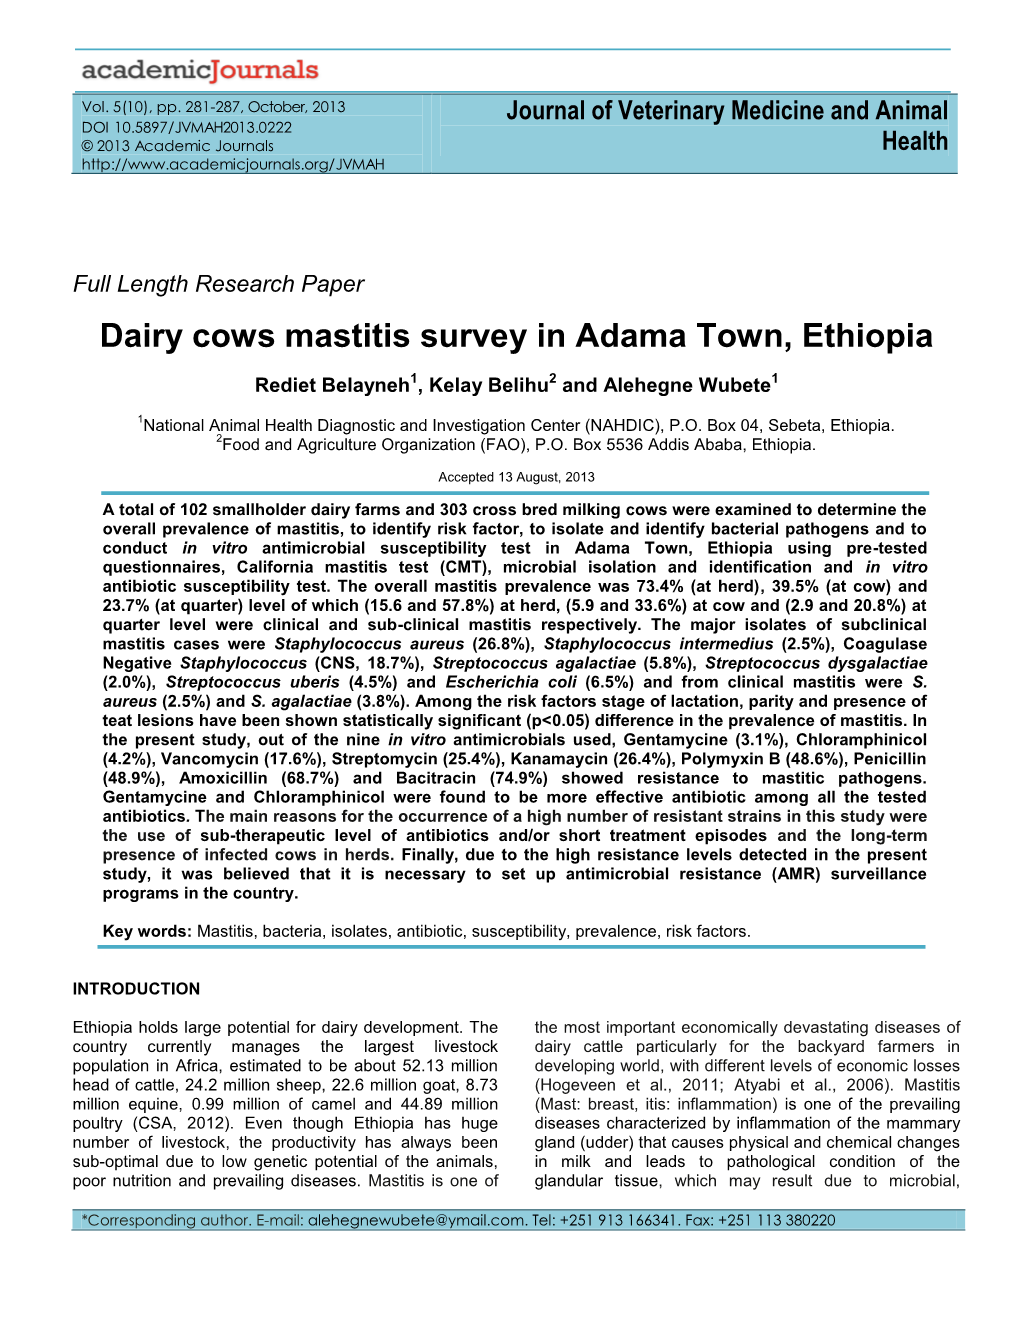 Dairy Cows Mastitis Survey in Adama Town, Ethiopia